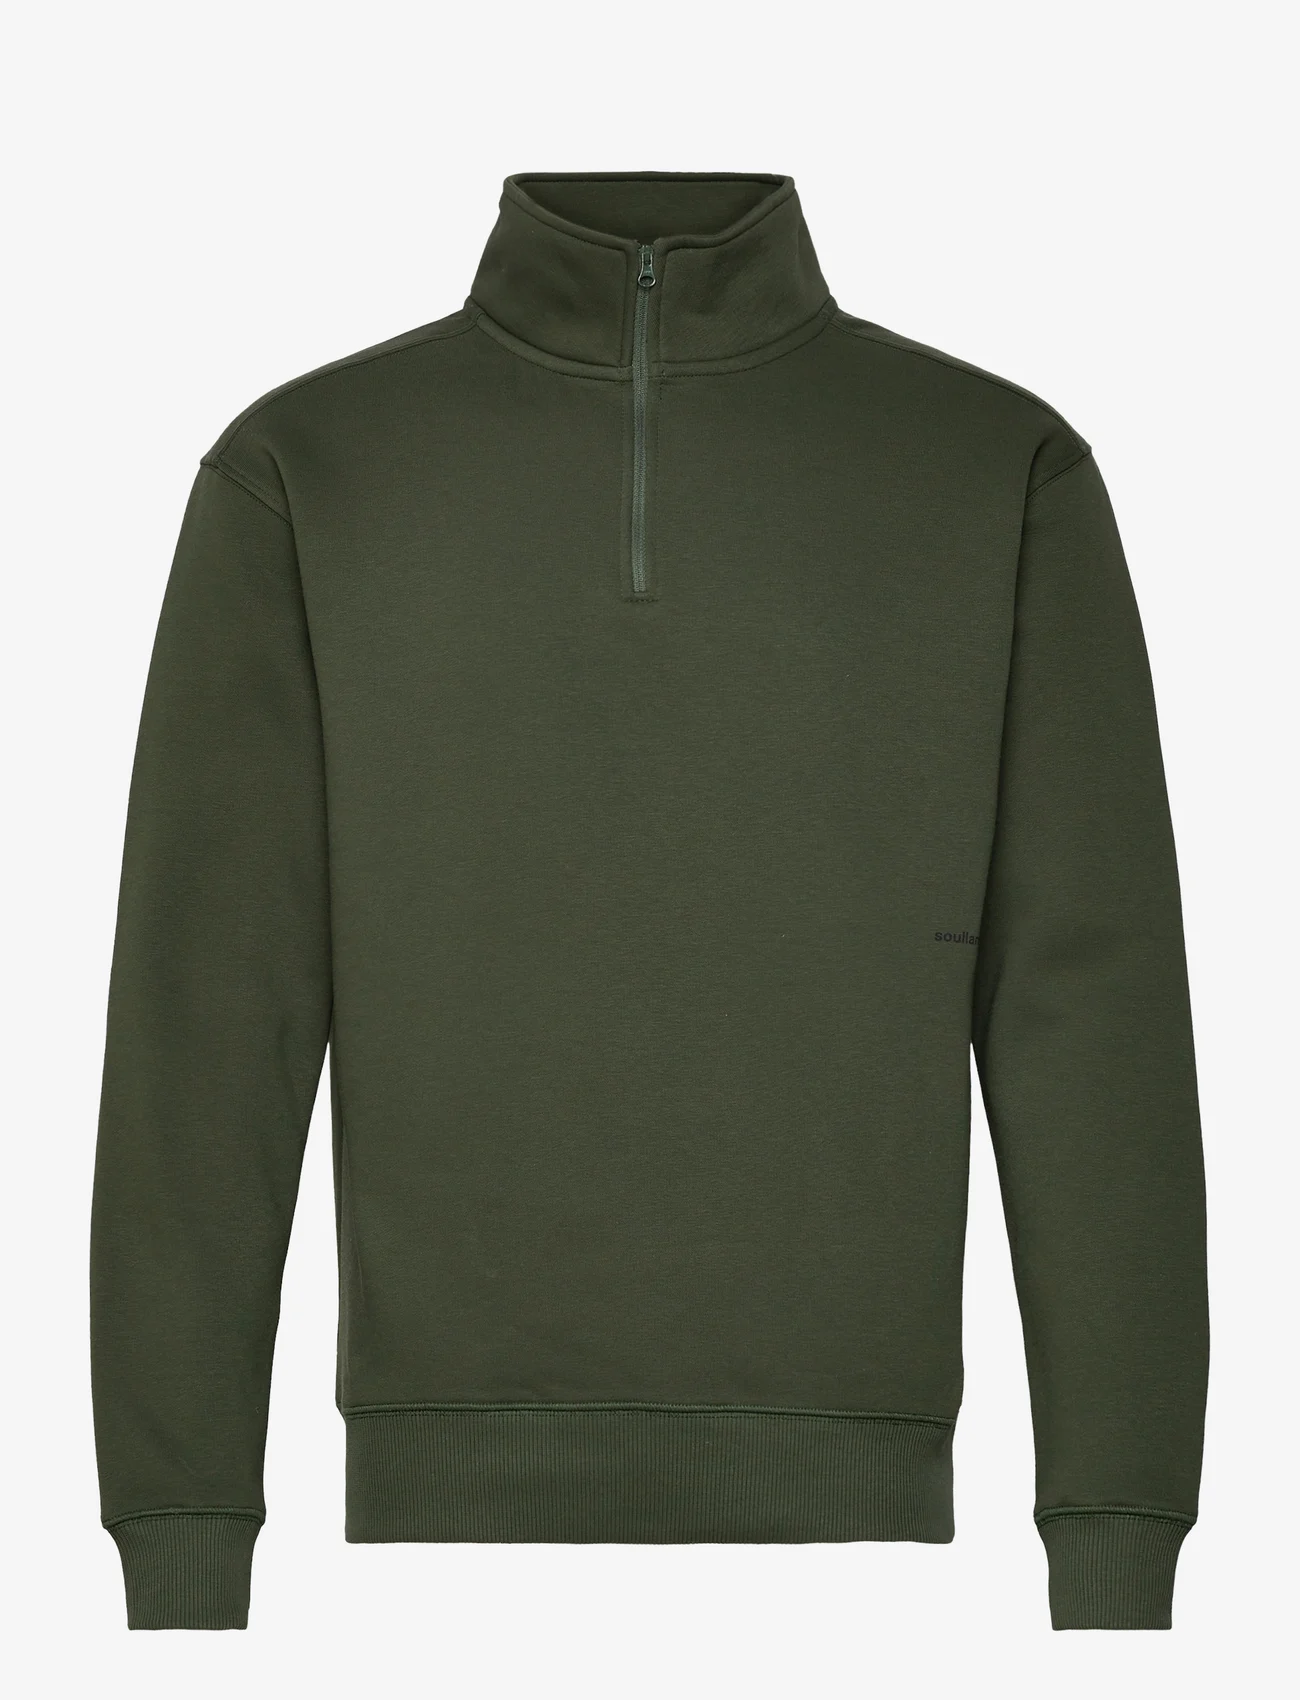 Soulland - Ken Half Zip Sweatshirt - hoodies - green - 0